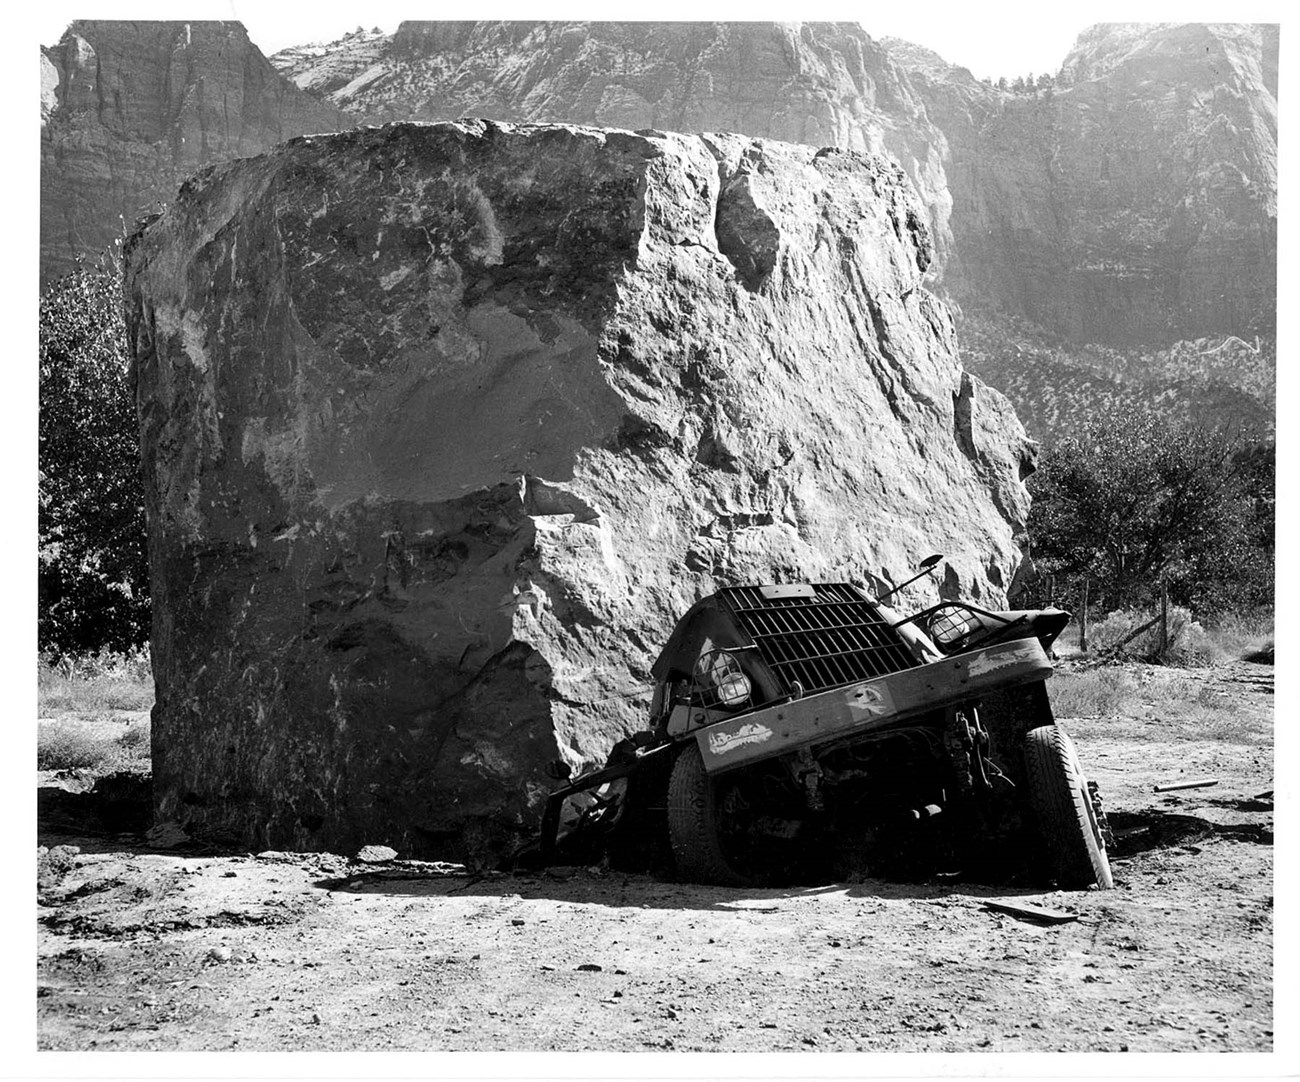 large boulder on top on smashed truck